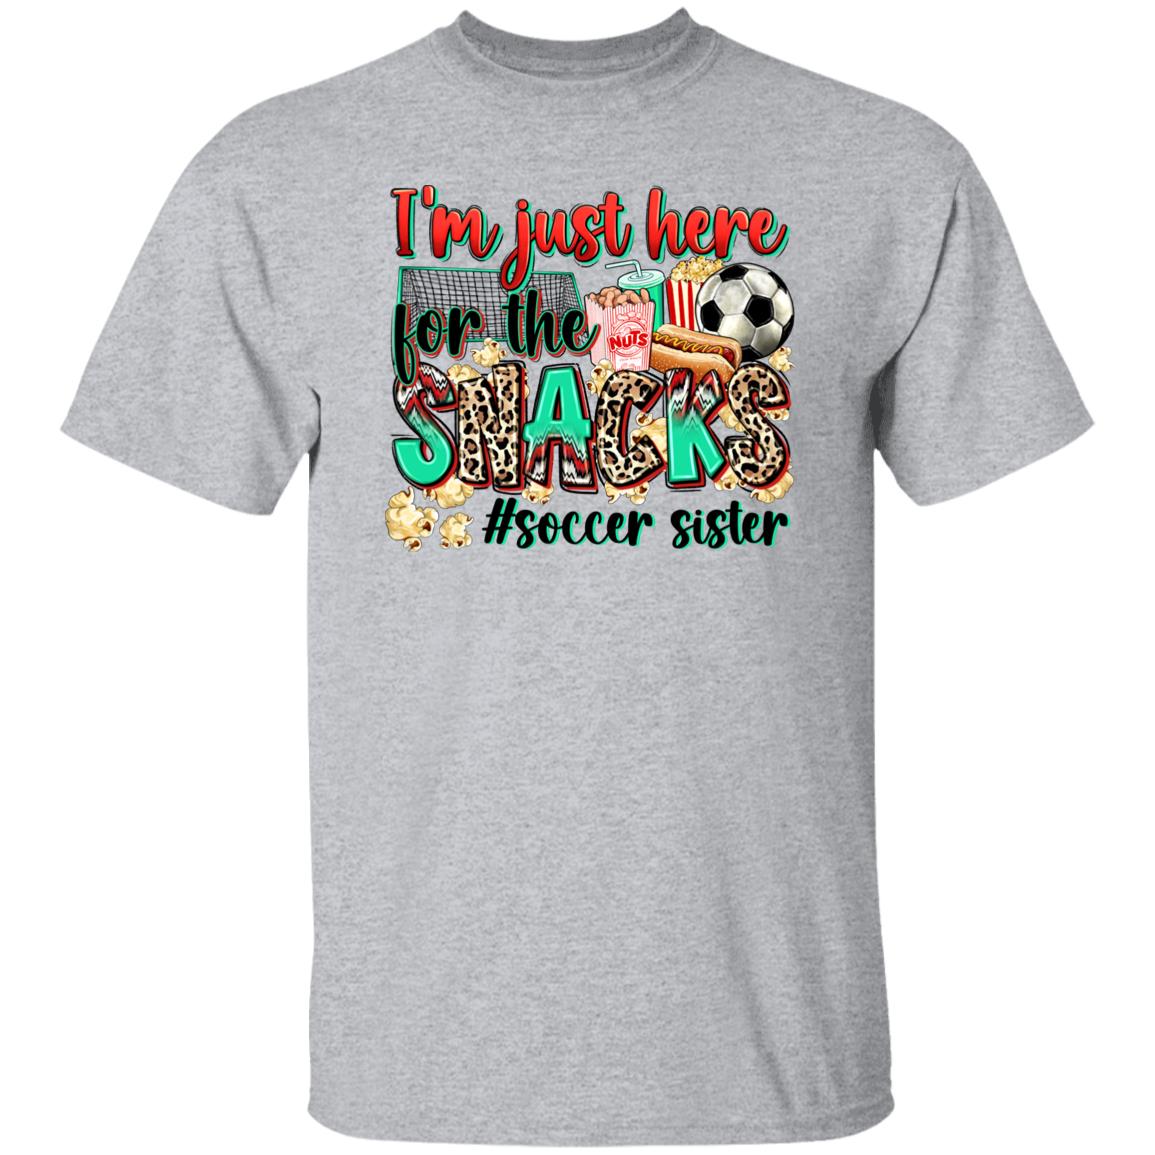 Soccer sister T-Shirt Soccer cheer I'm just here for the snacks Unisex Tee Sand White Sport Grey-Family-Gift-Planet